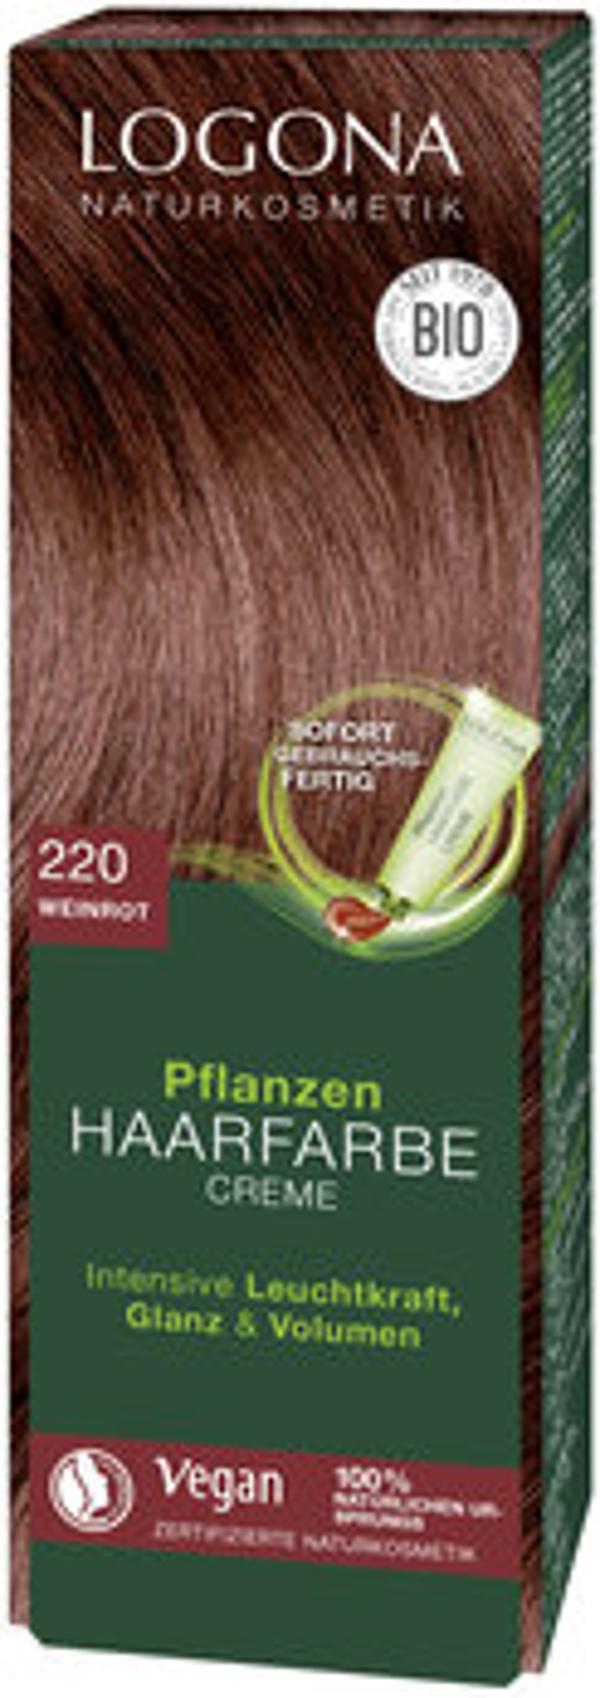 Produktfoto zu Pflanzen Haarfarbe Creme 220 weinrot 150ml